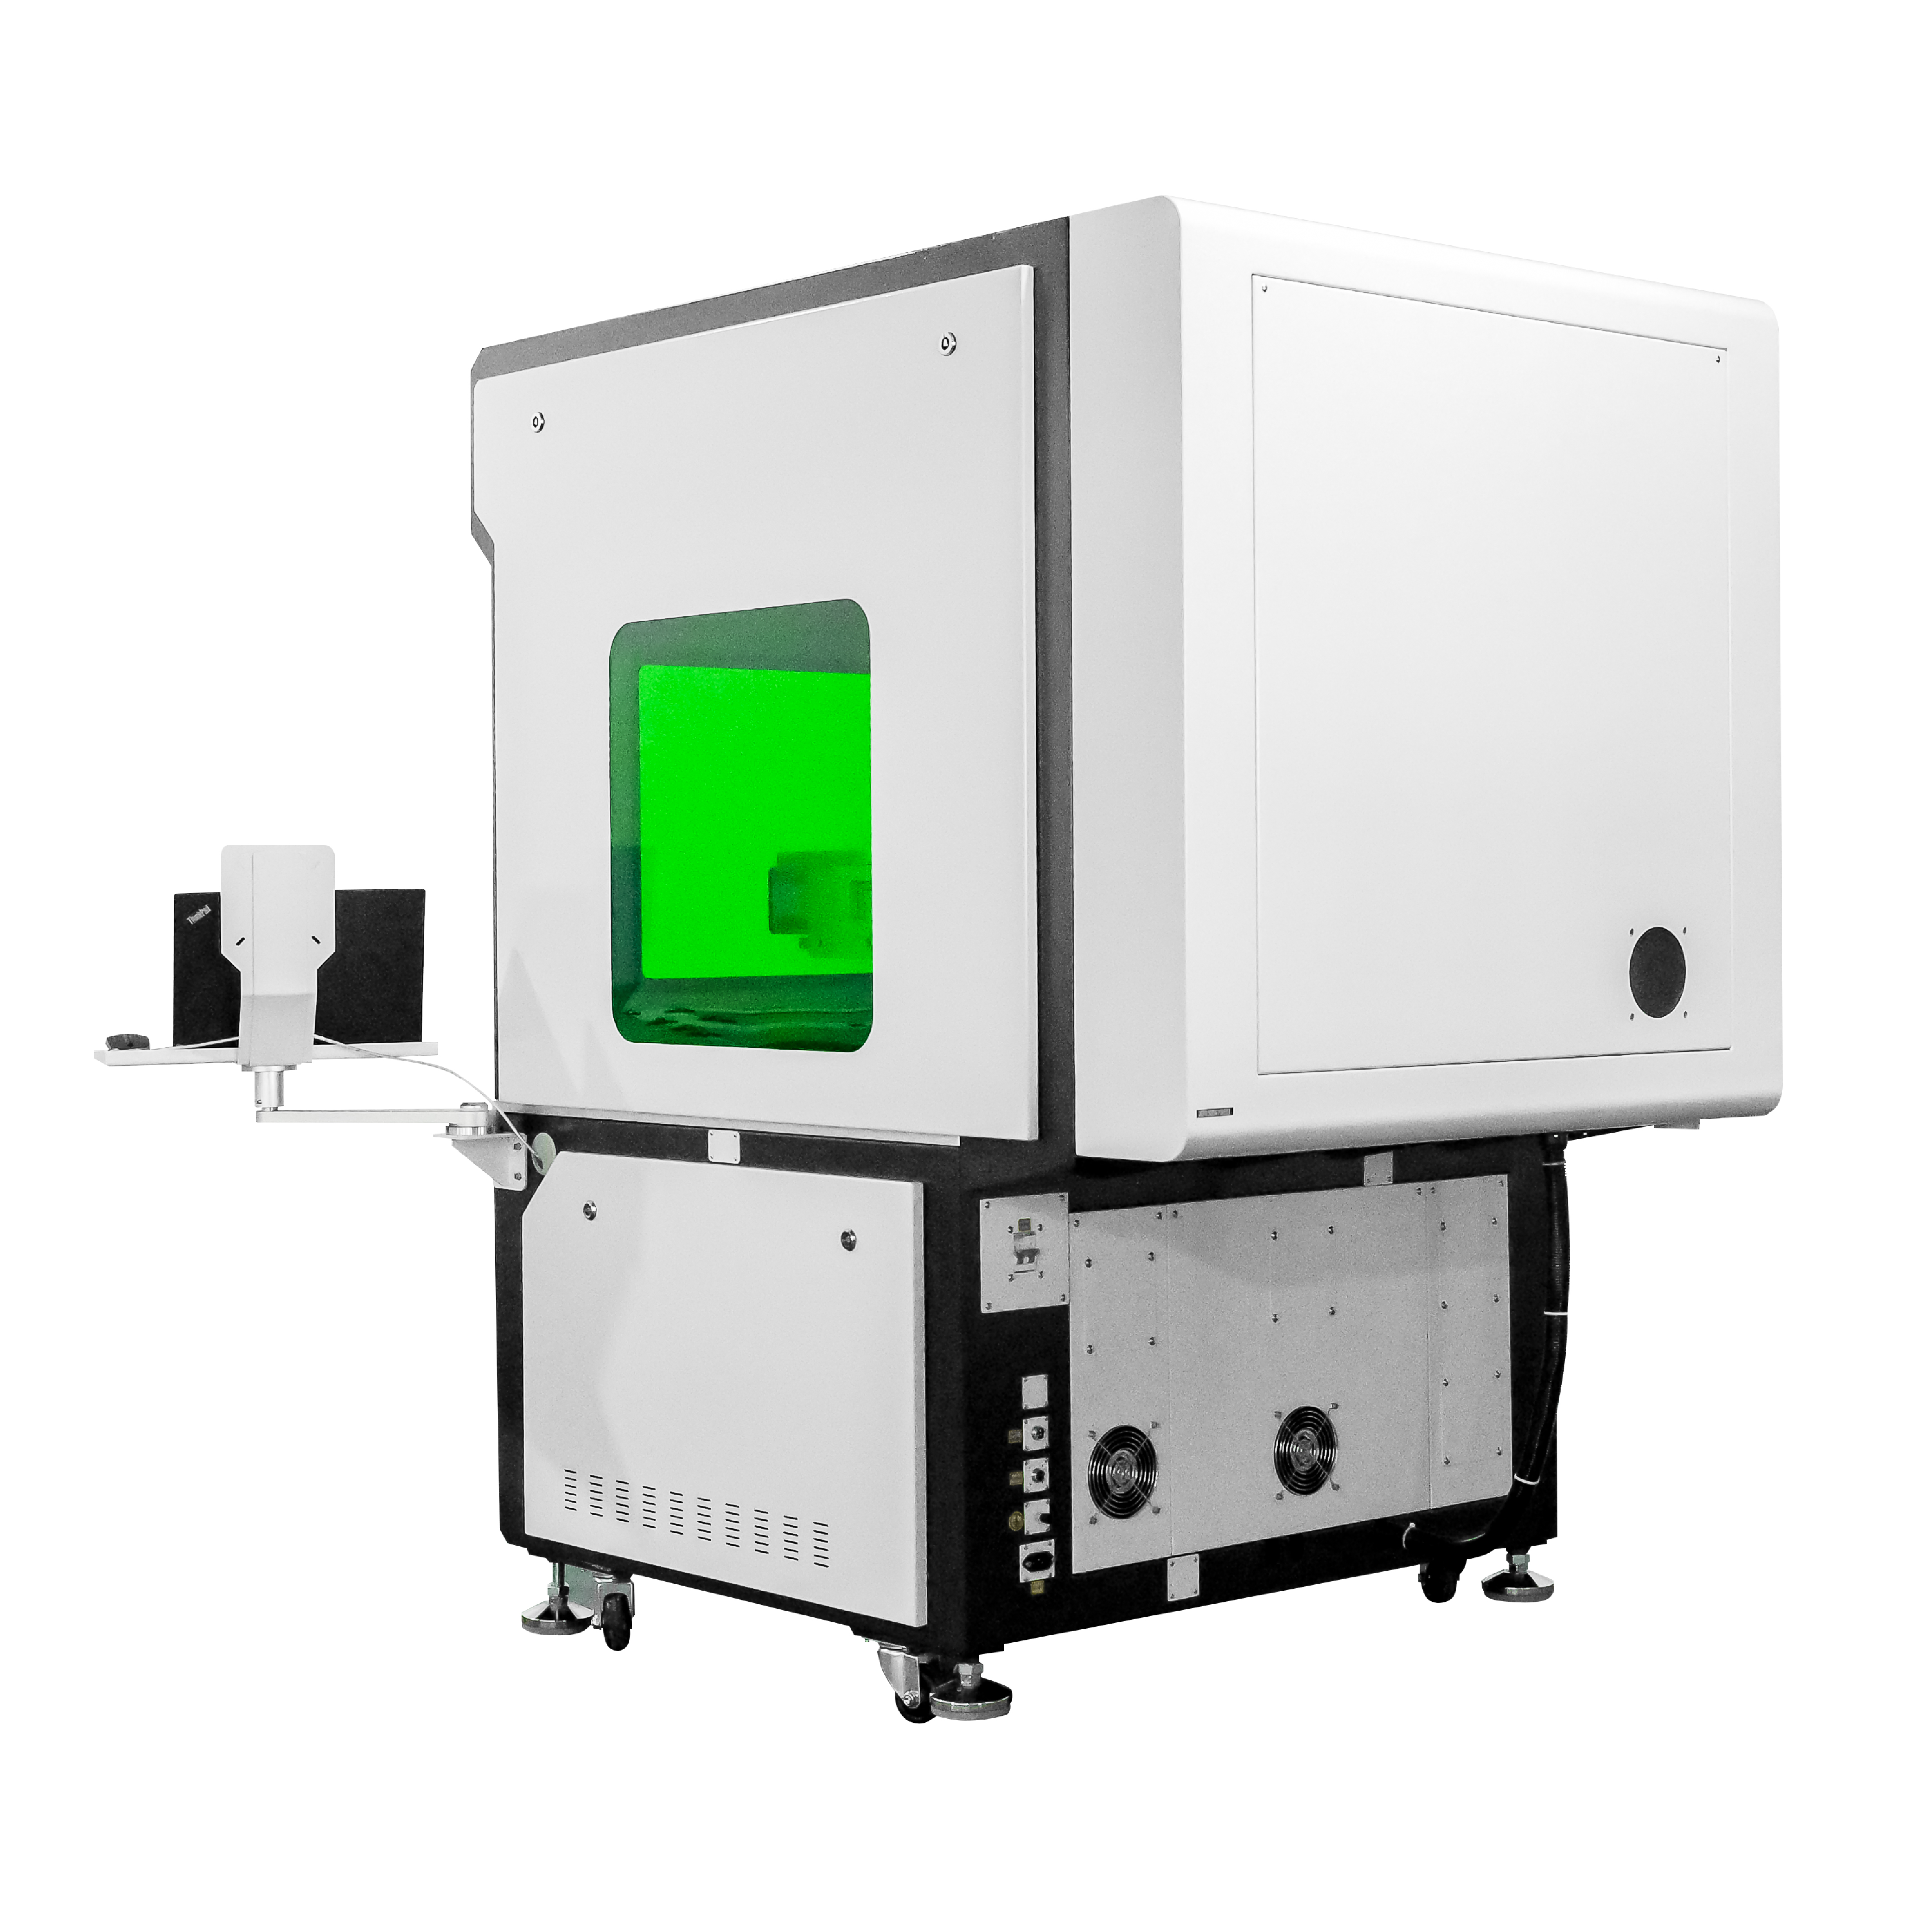 800 * 800 mm 1000 * 100 mm Fiber Mopa-lasermarkeermachine voor het graveren van grote oppervlakken / lasersplitsingsmarkeringen